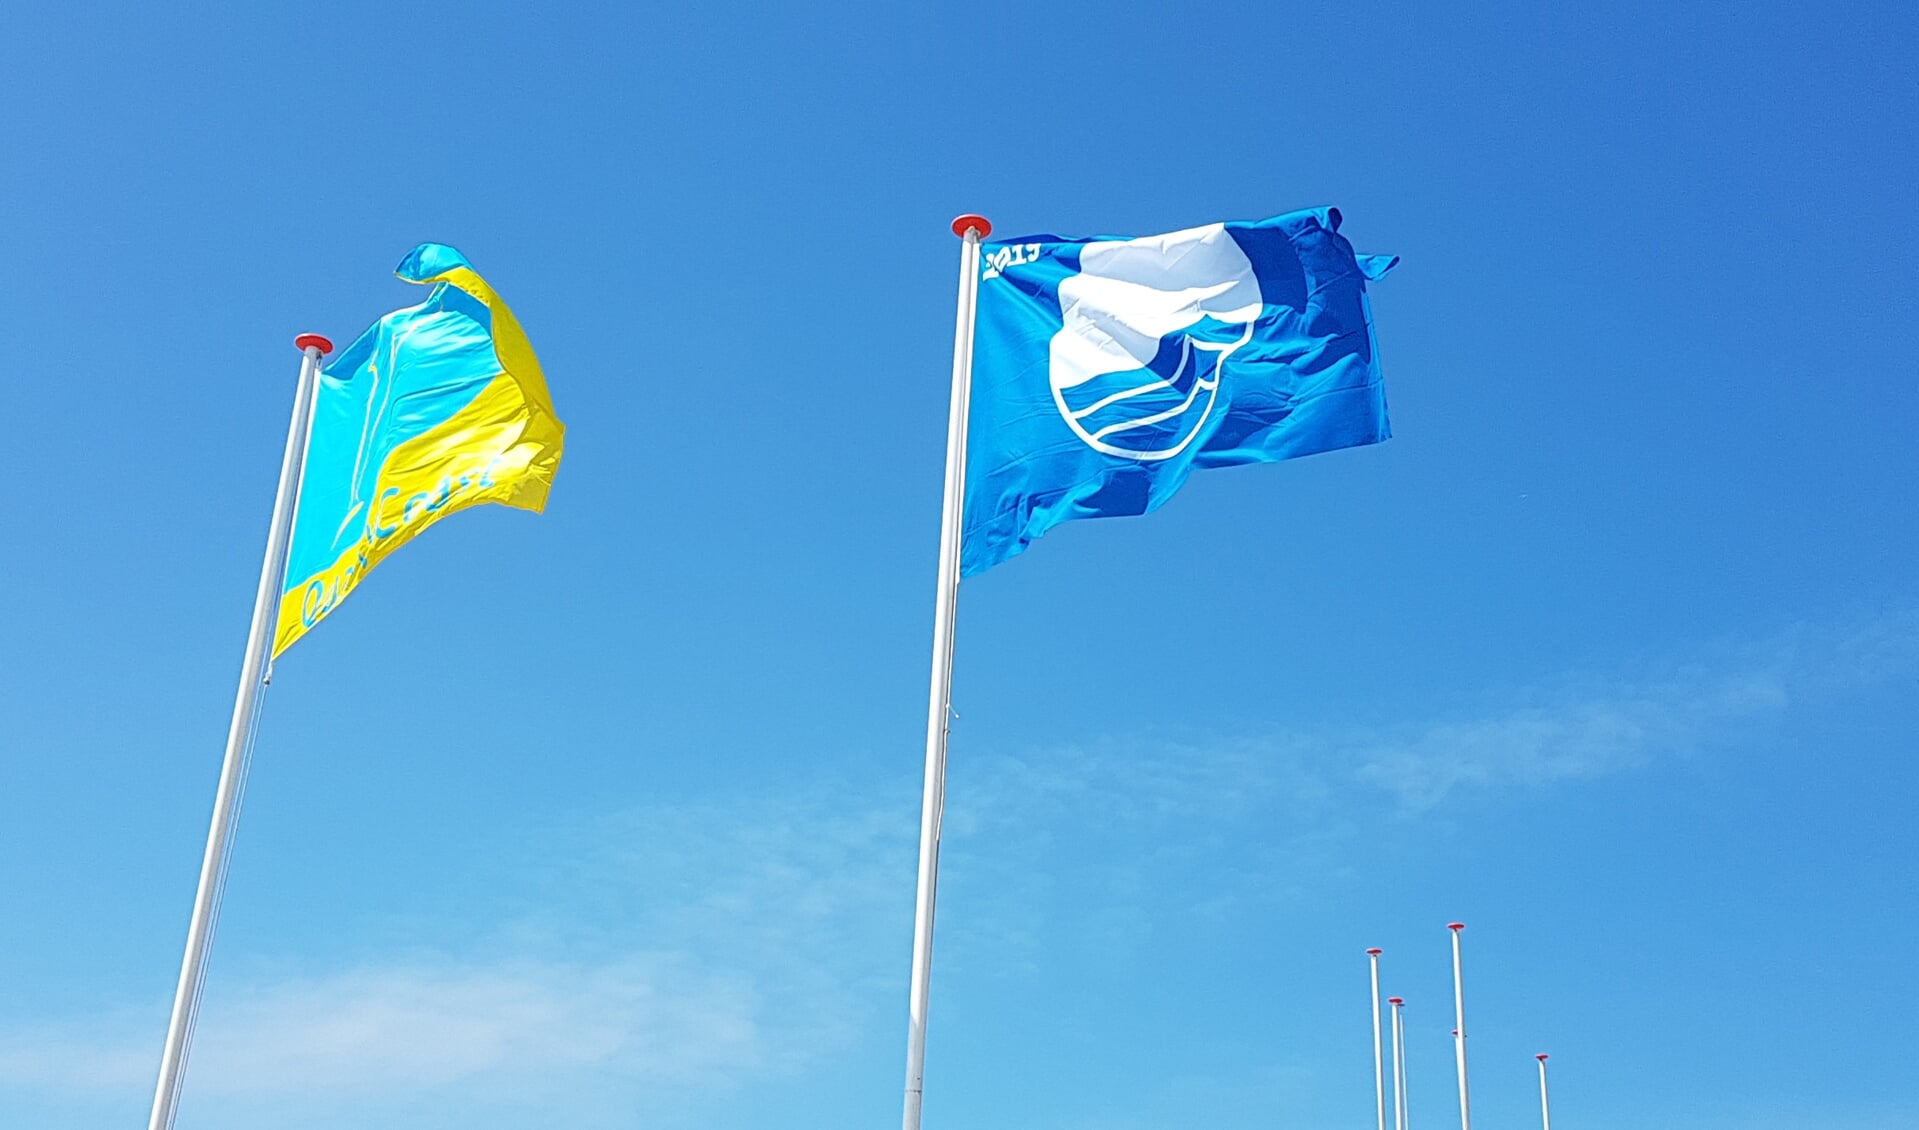 De stranden van gemeente Schagen hebben de Blauwe Vlag weer binnen.